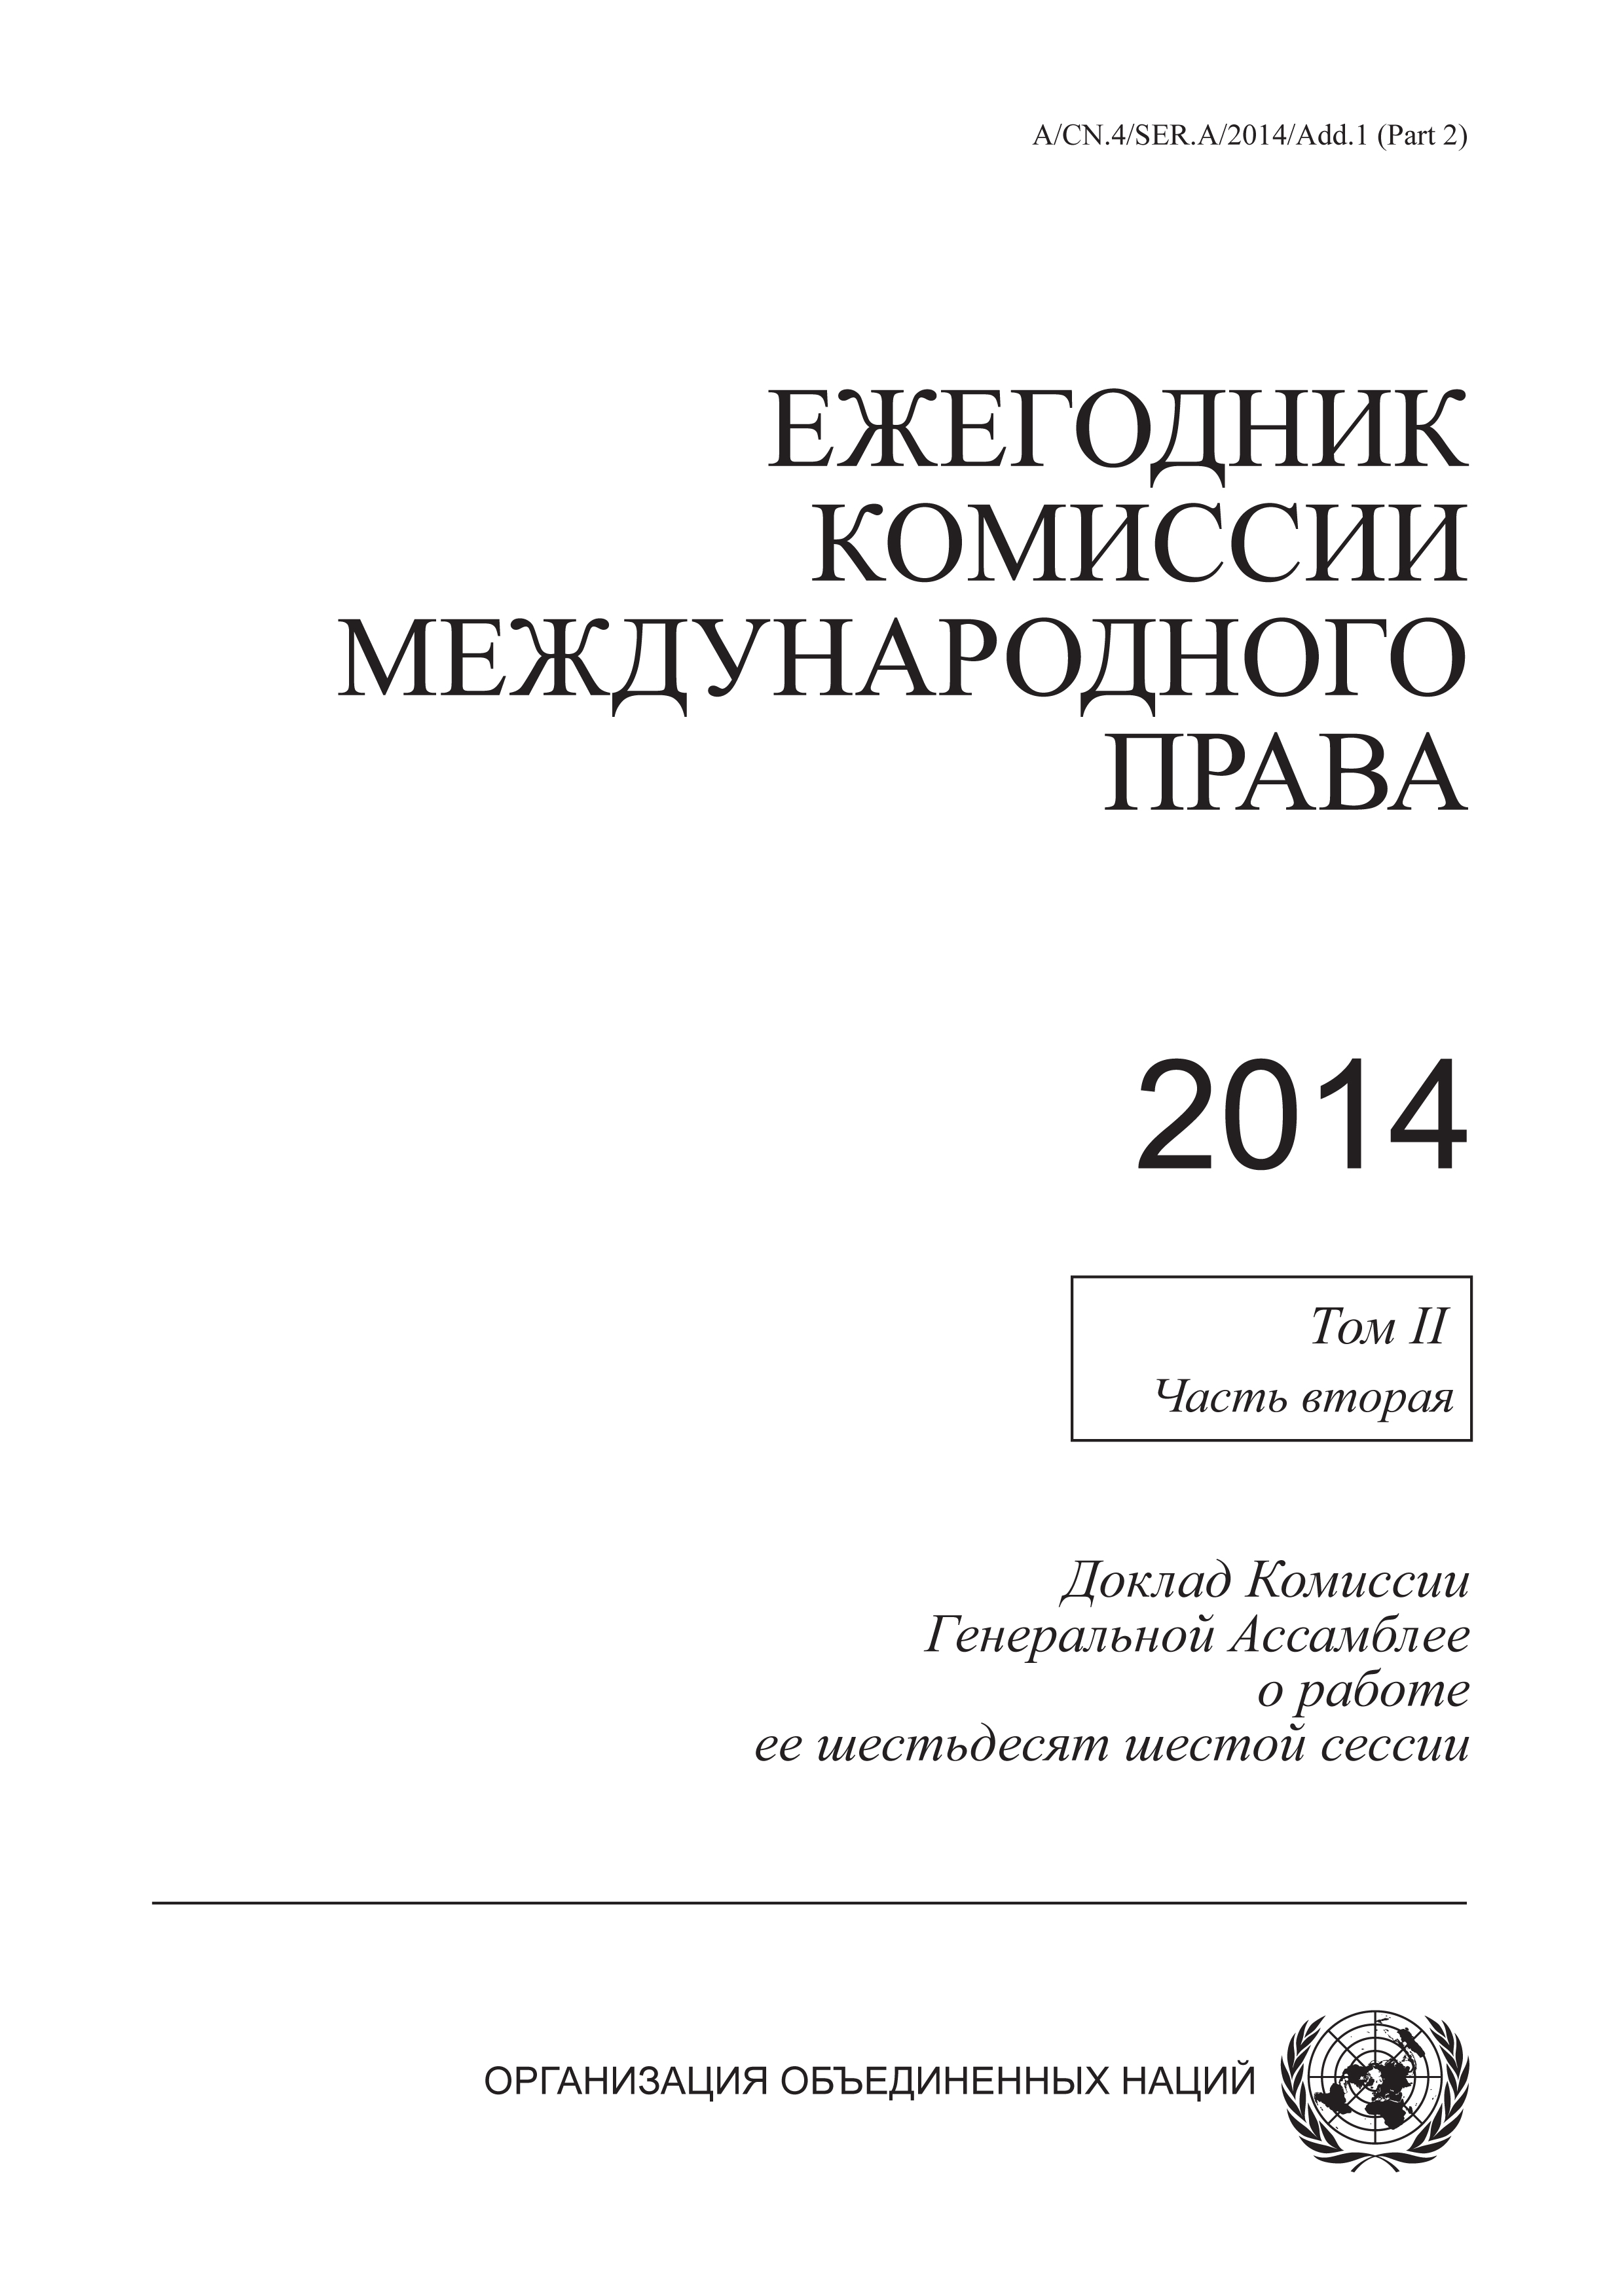 image of Многосторонние документы, цитируемые в настоящем томе